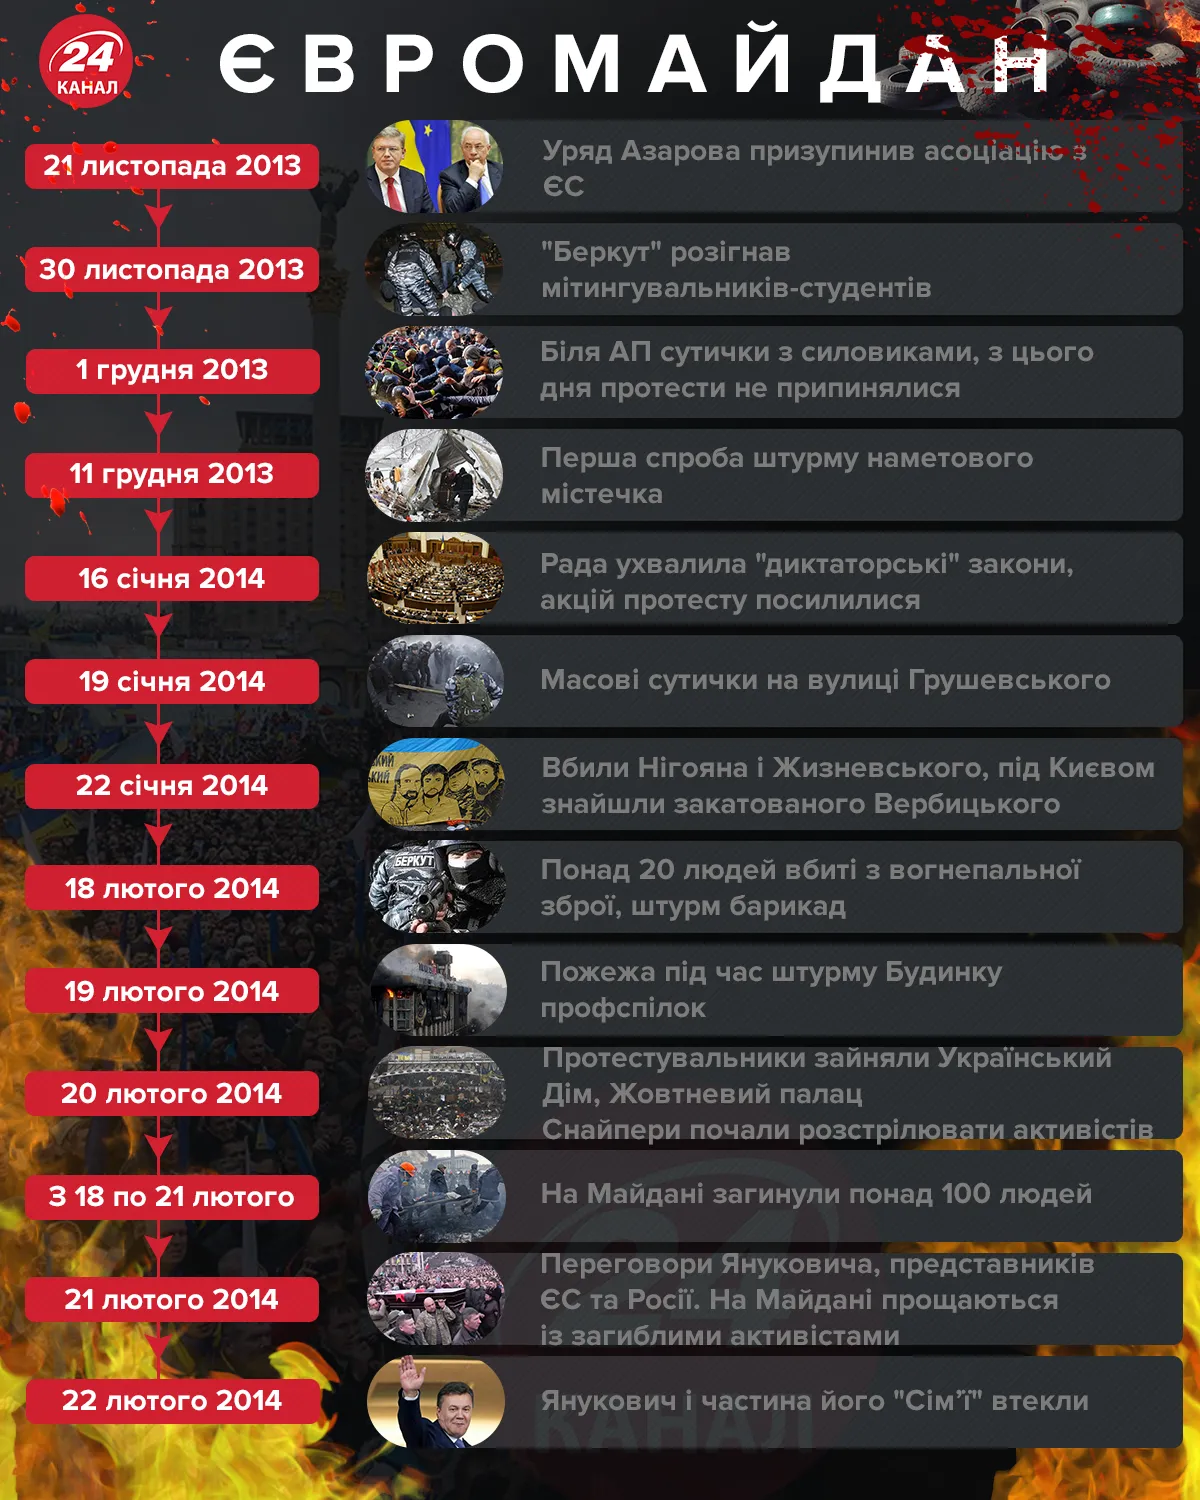 Євромайданподії картинка 24 каналу